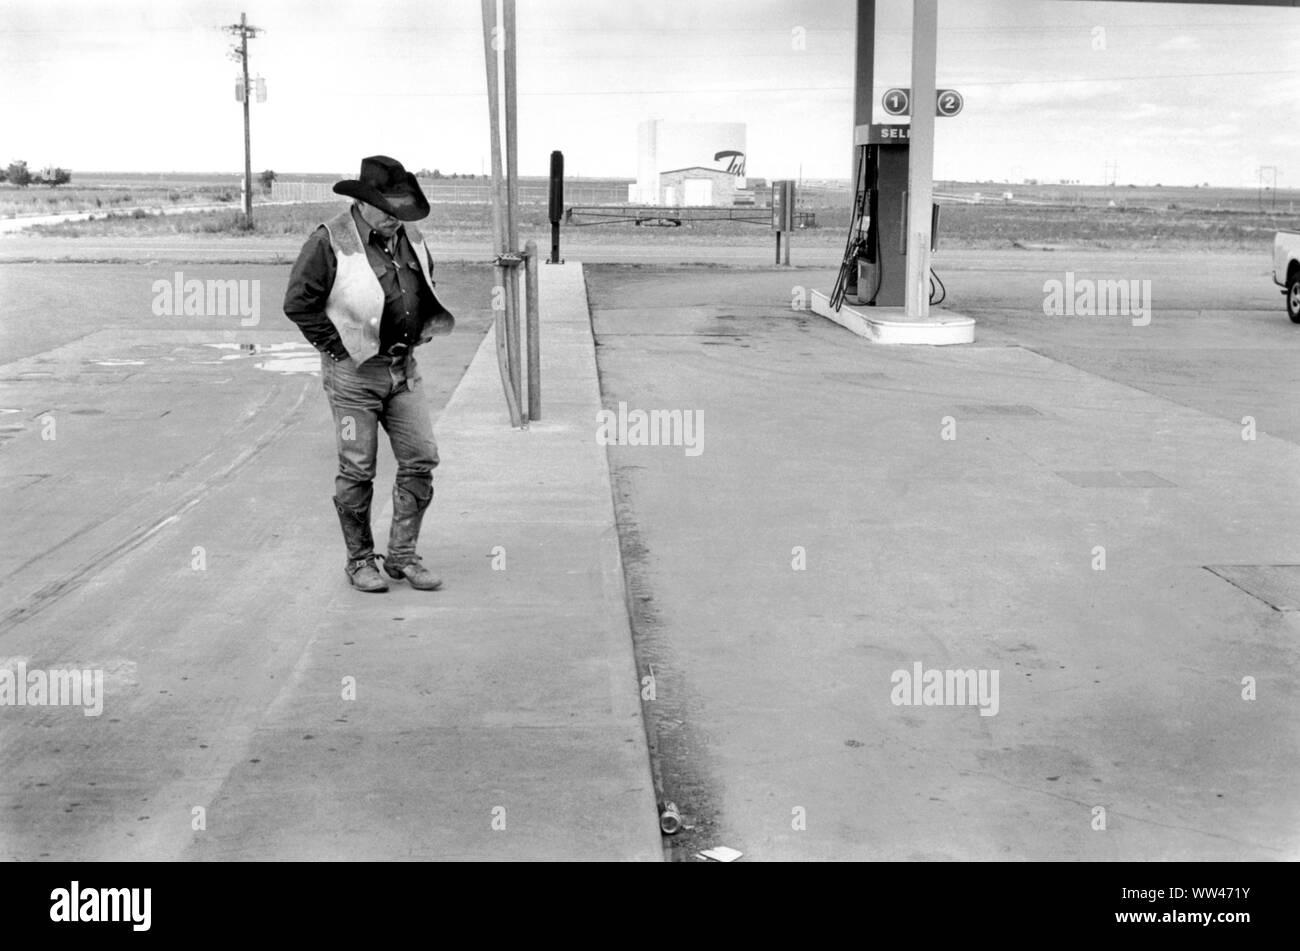 Cow-boy des années 1990 Denton Texas. Ranger seul dans son State Hat of Texas, un chapeau de dix gallons et des bottes de cow-boy et des vêtements typiques d'un ouvrier de ranch marchant à travers le parvis à une station essence 1999 US HOMER SYKES Banque D'Images